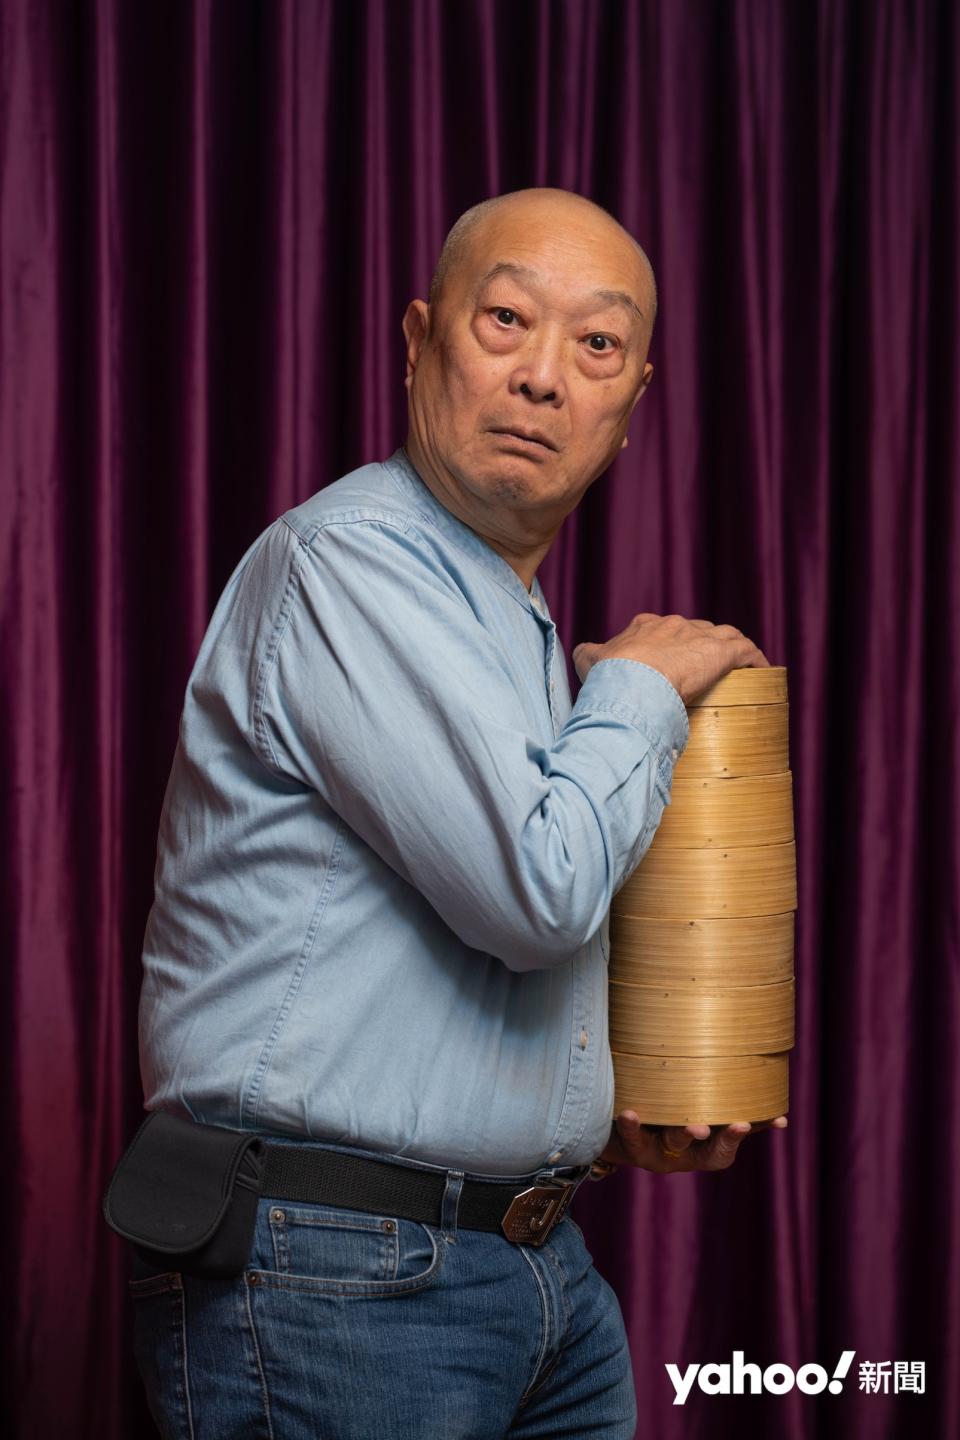 盧康源（湯圓）現年78歲，加入劇社7年，每次演出均靠抄寫記劇本。
